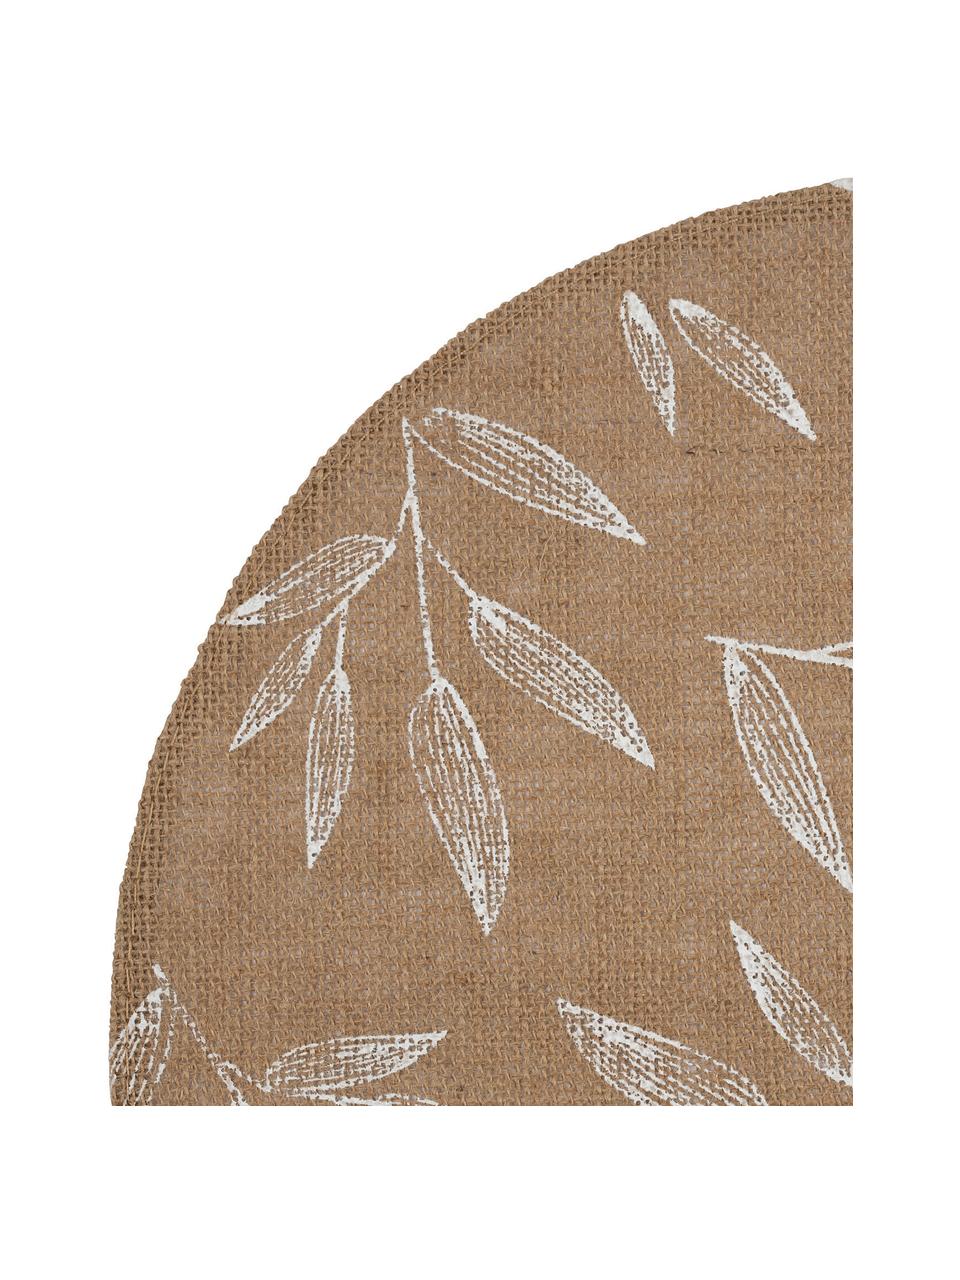 Placemats Pep met blad motief, 2 stuks, Jute, Beige, wit, 40 x 40 cm